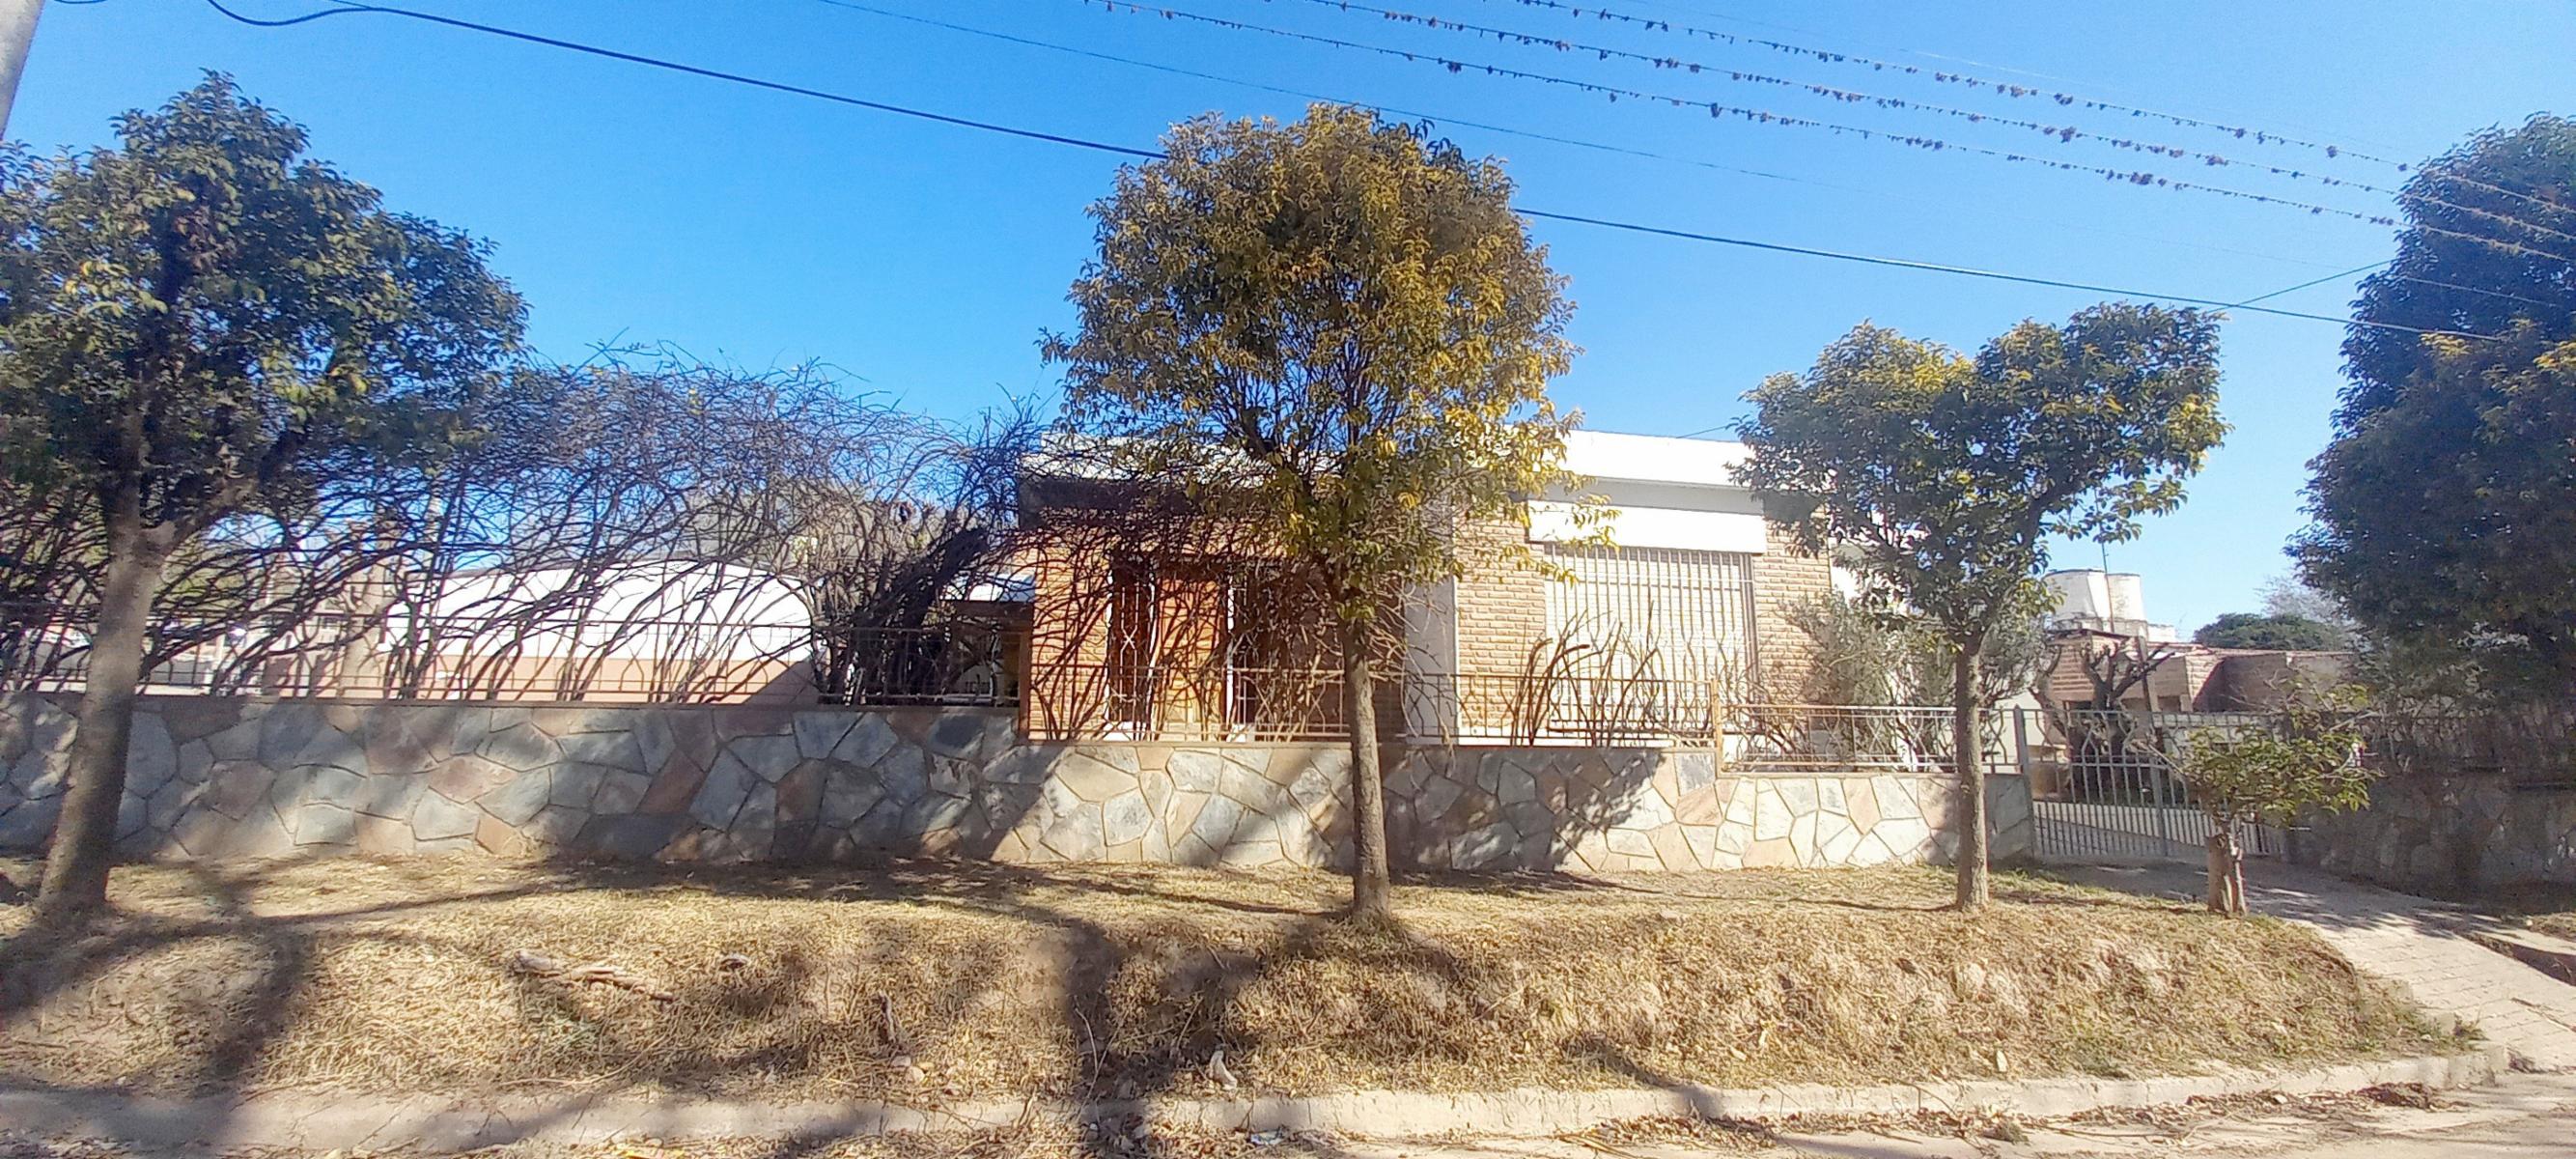 Casa 2 Dormitorios, Parque, Patio y Garage, Cerca de Av San Martin en Huerta Grande, Córdoba